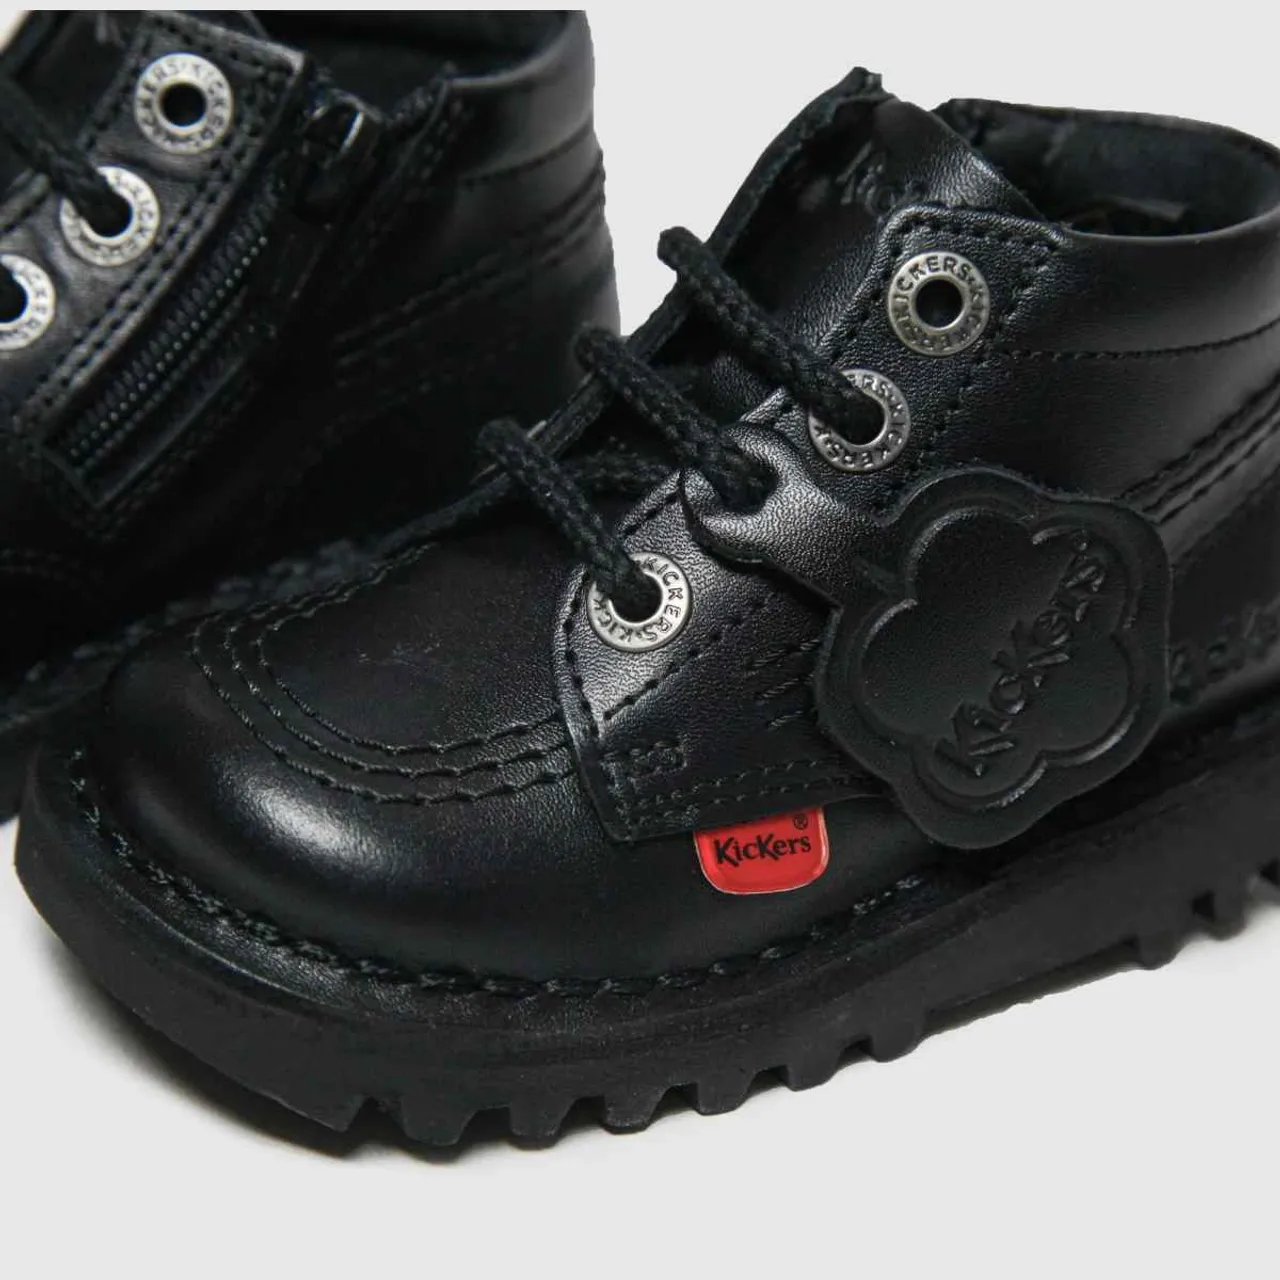 Kickers Black Hi Zip Toddler Boots